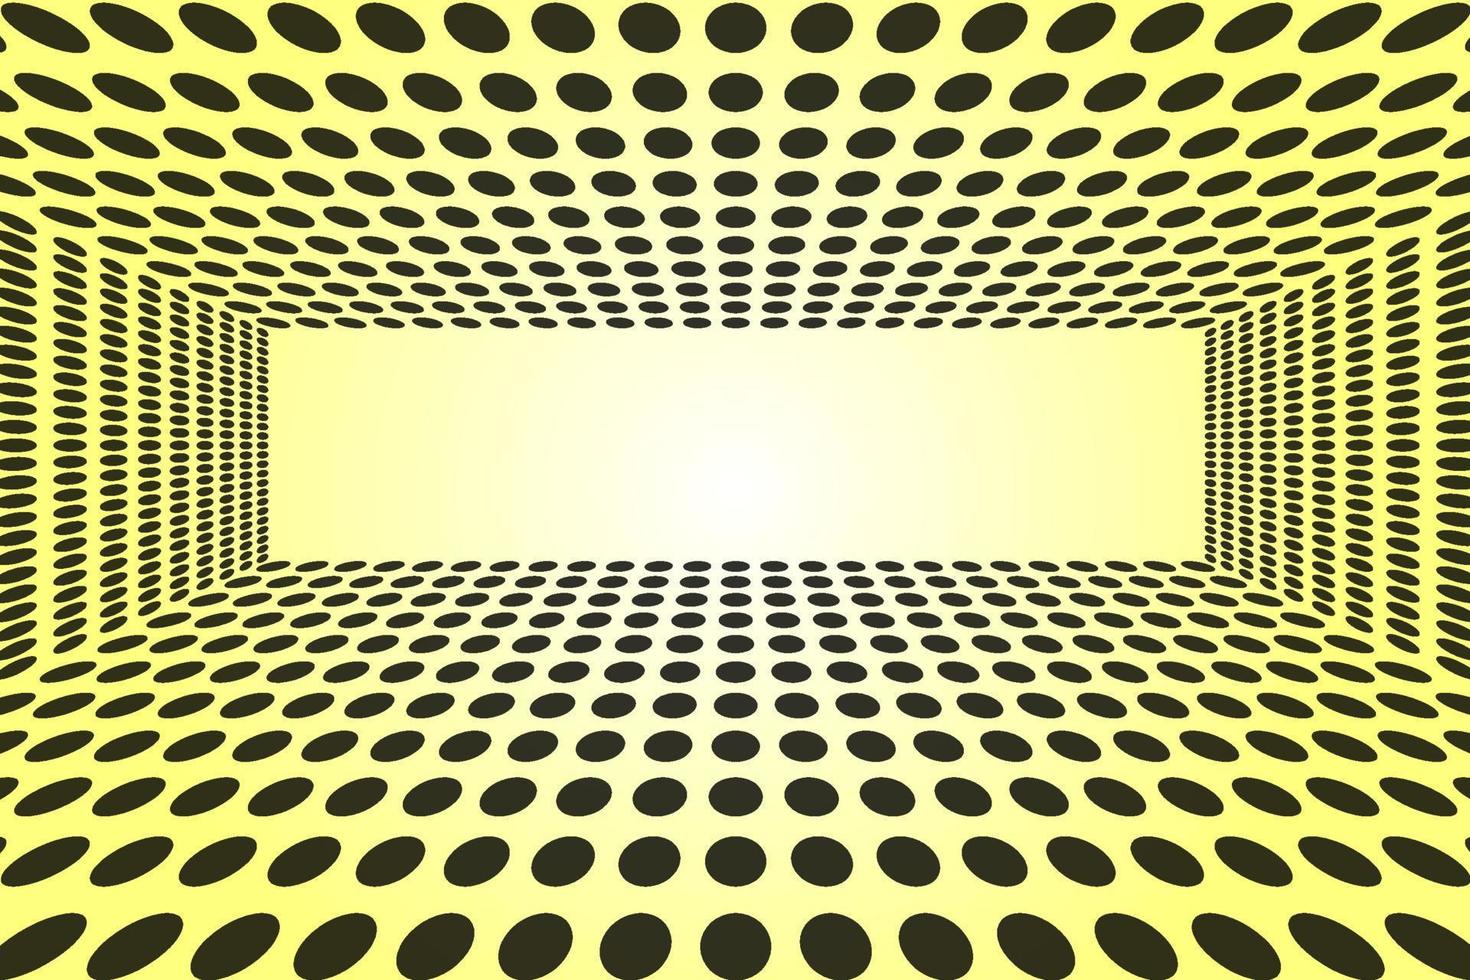 vetor padrão isométrico fundo abstrato, perspectiva círculo ponto geométrico forma fundo amarelo